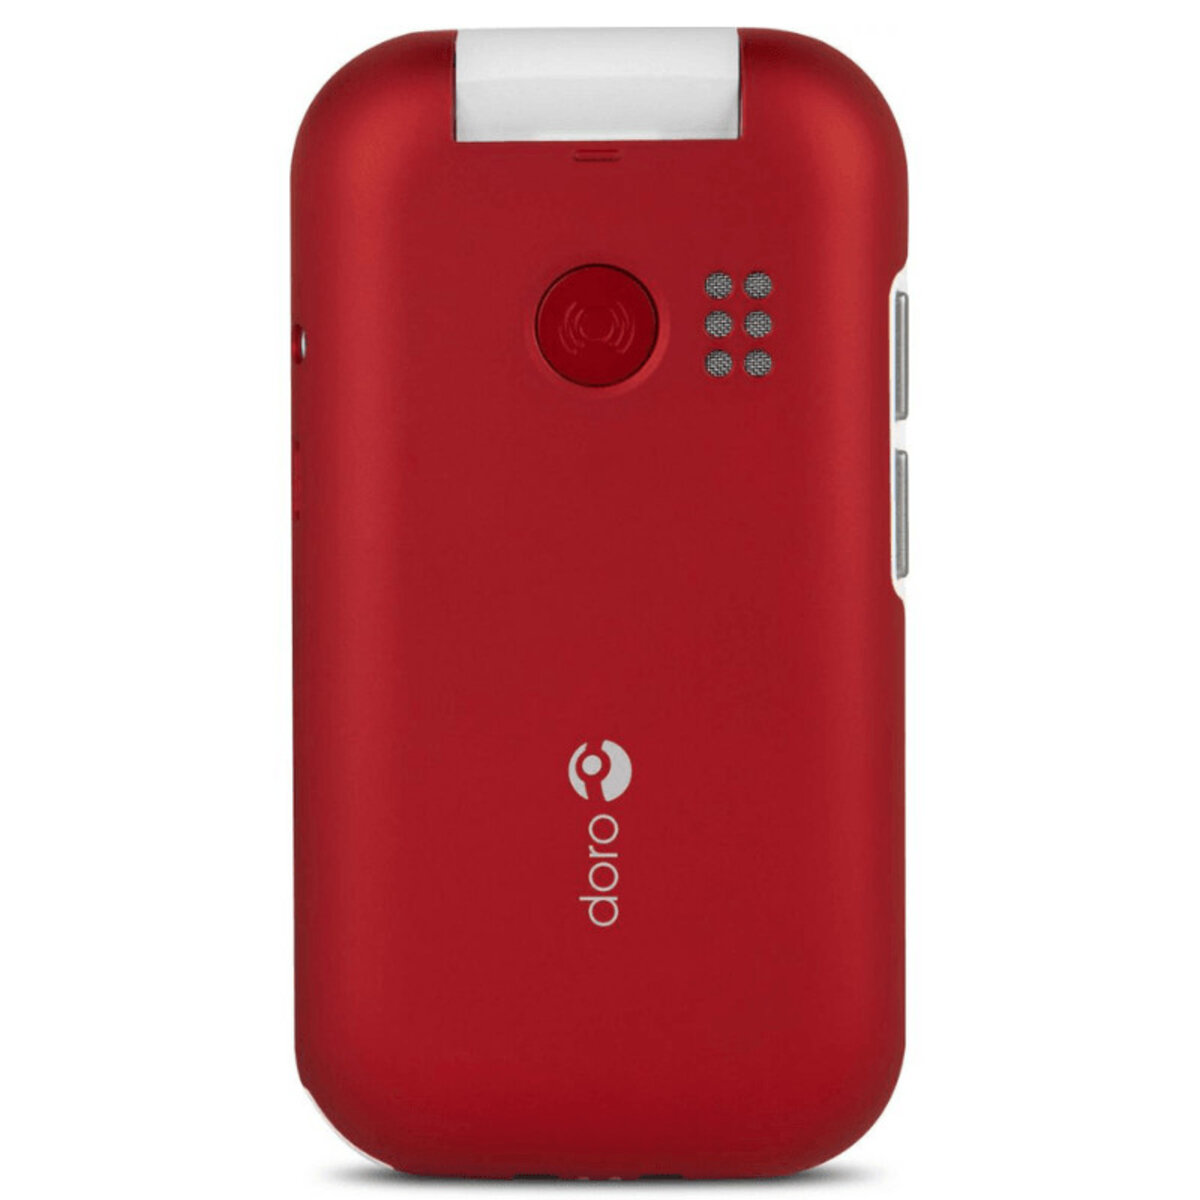 Doro 6040 : Téléphone Portable Senior à Clapet